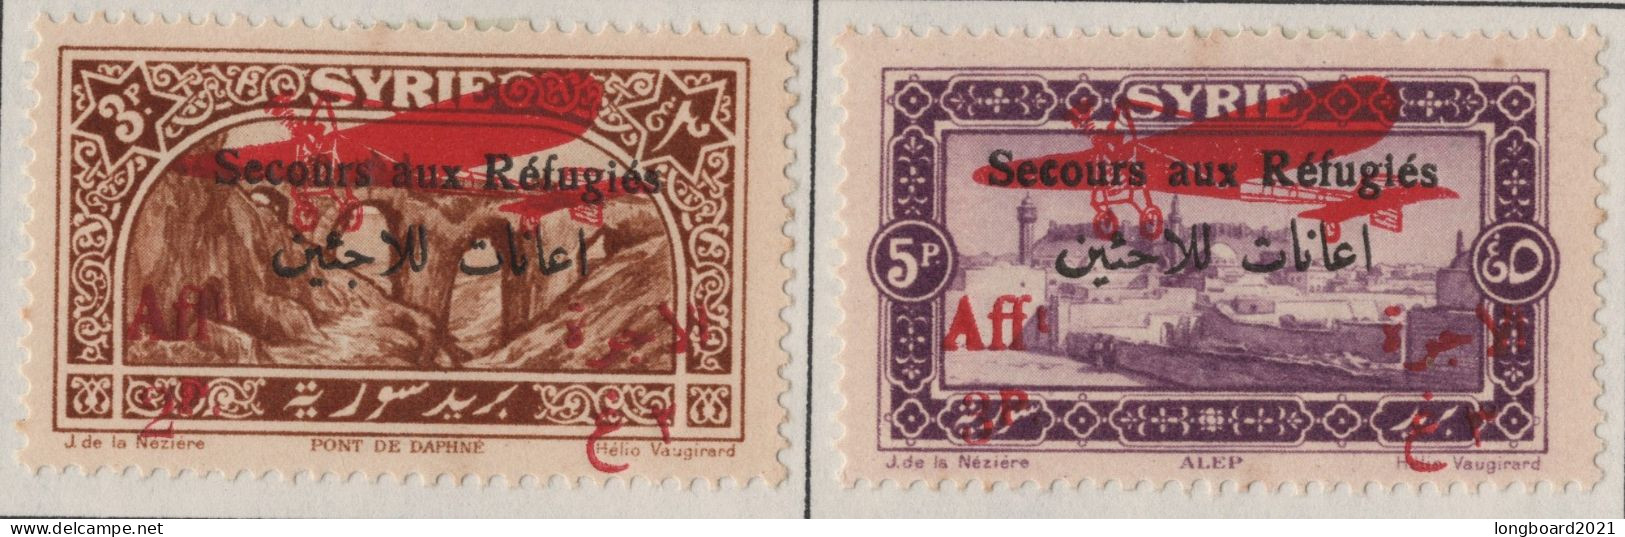 SYRIA - SET 1926 3 + 5 P REFUGEE -AIRMAIL- * Mi 296-297 - Syria